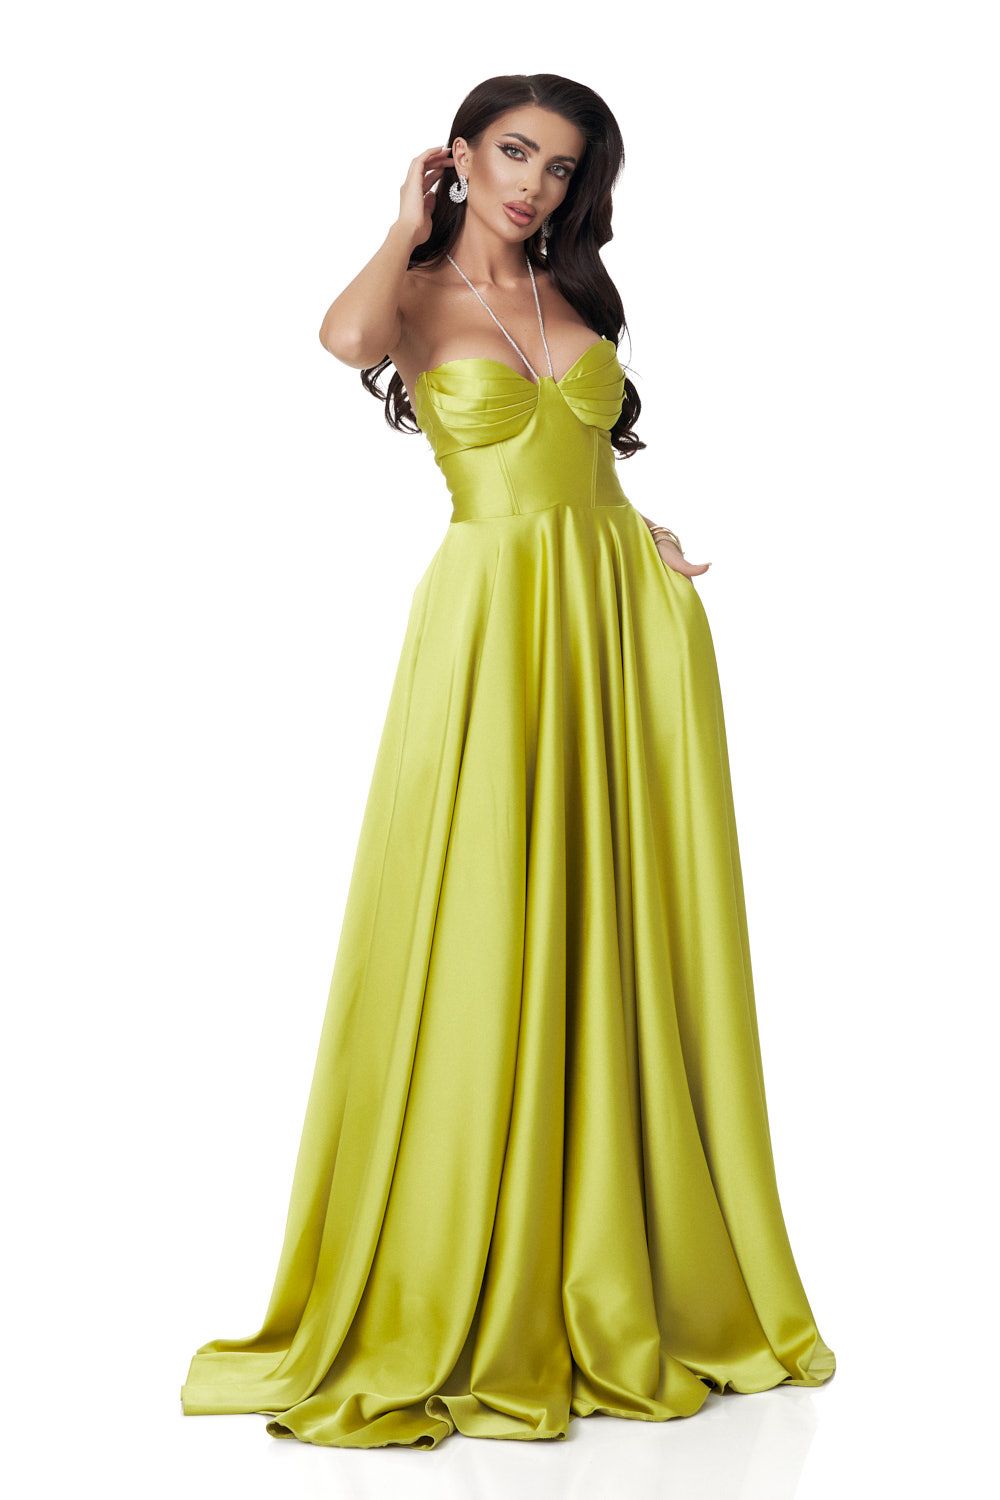 Lime green long taffeta dress for women Nayeli Bogas